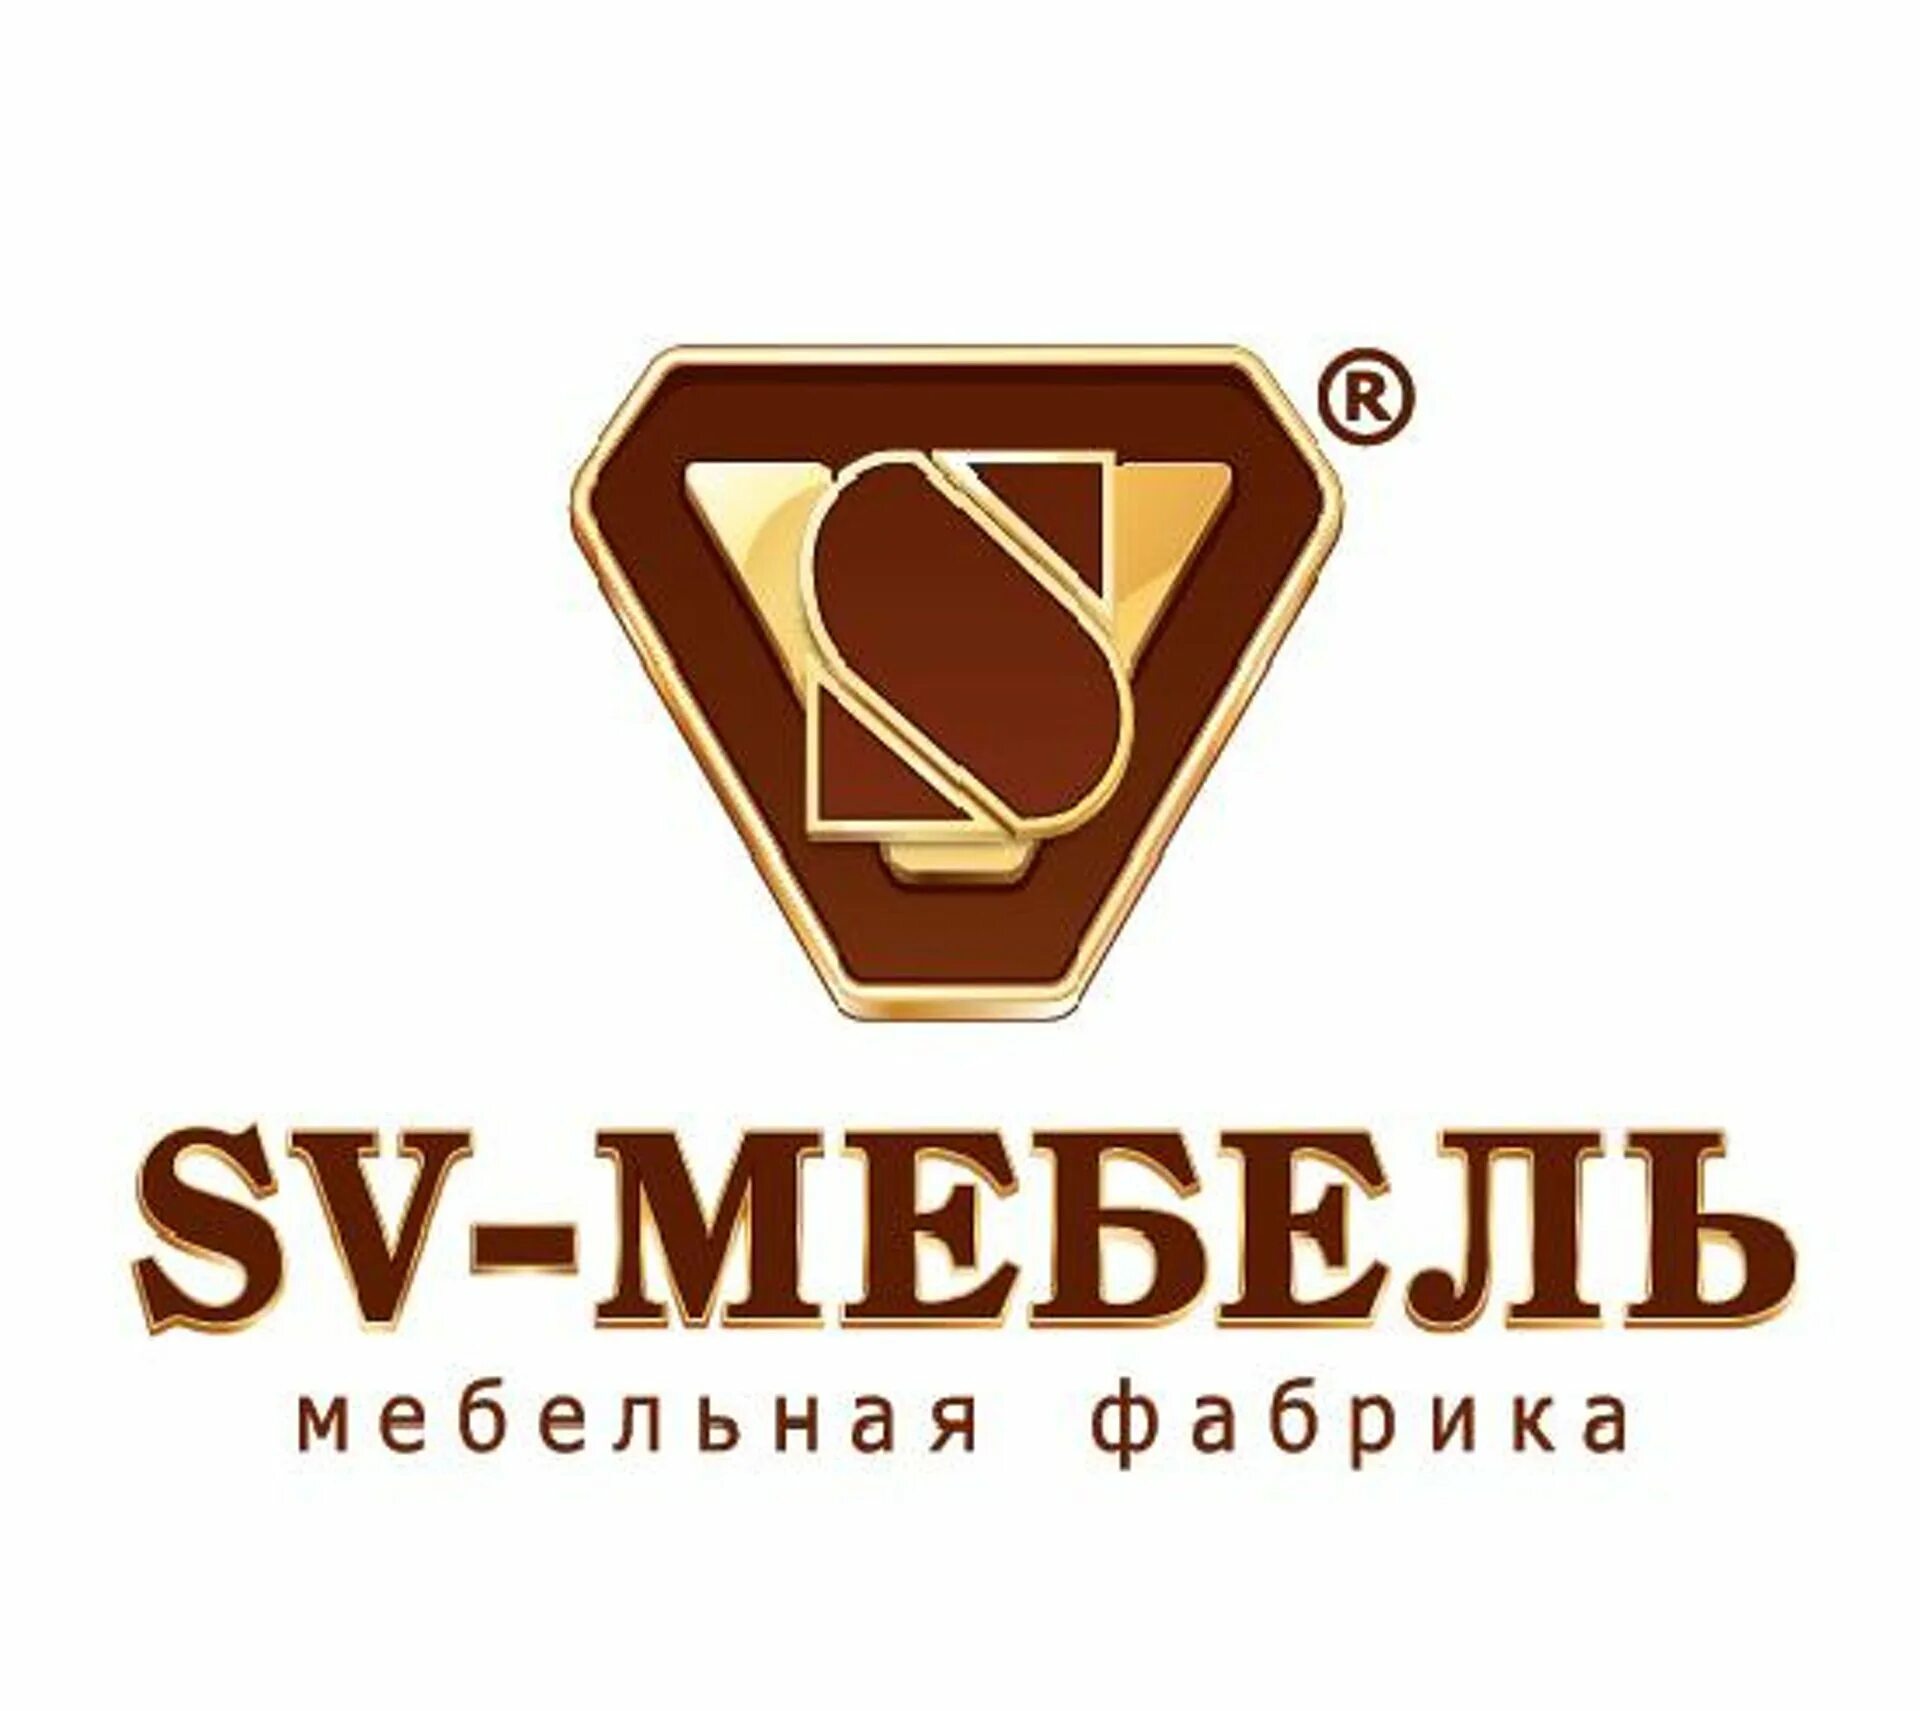 Фабрика св. SV mebel логотип. Логотип мебельной фабрики. Значок фабрика мебели. Фабрика мебели значьуи.